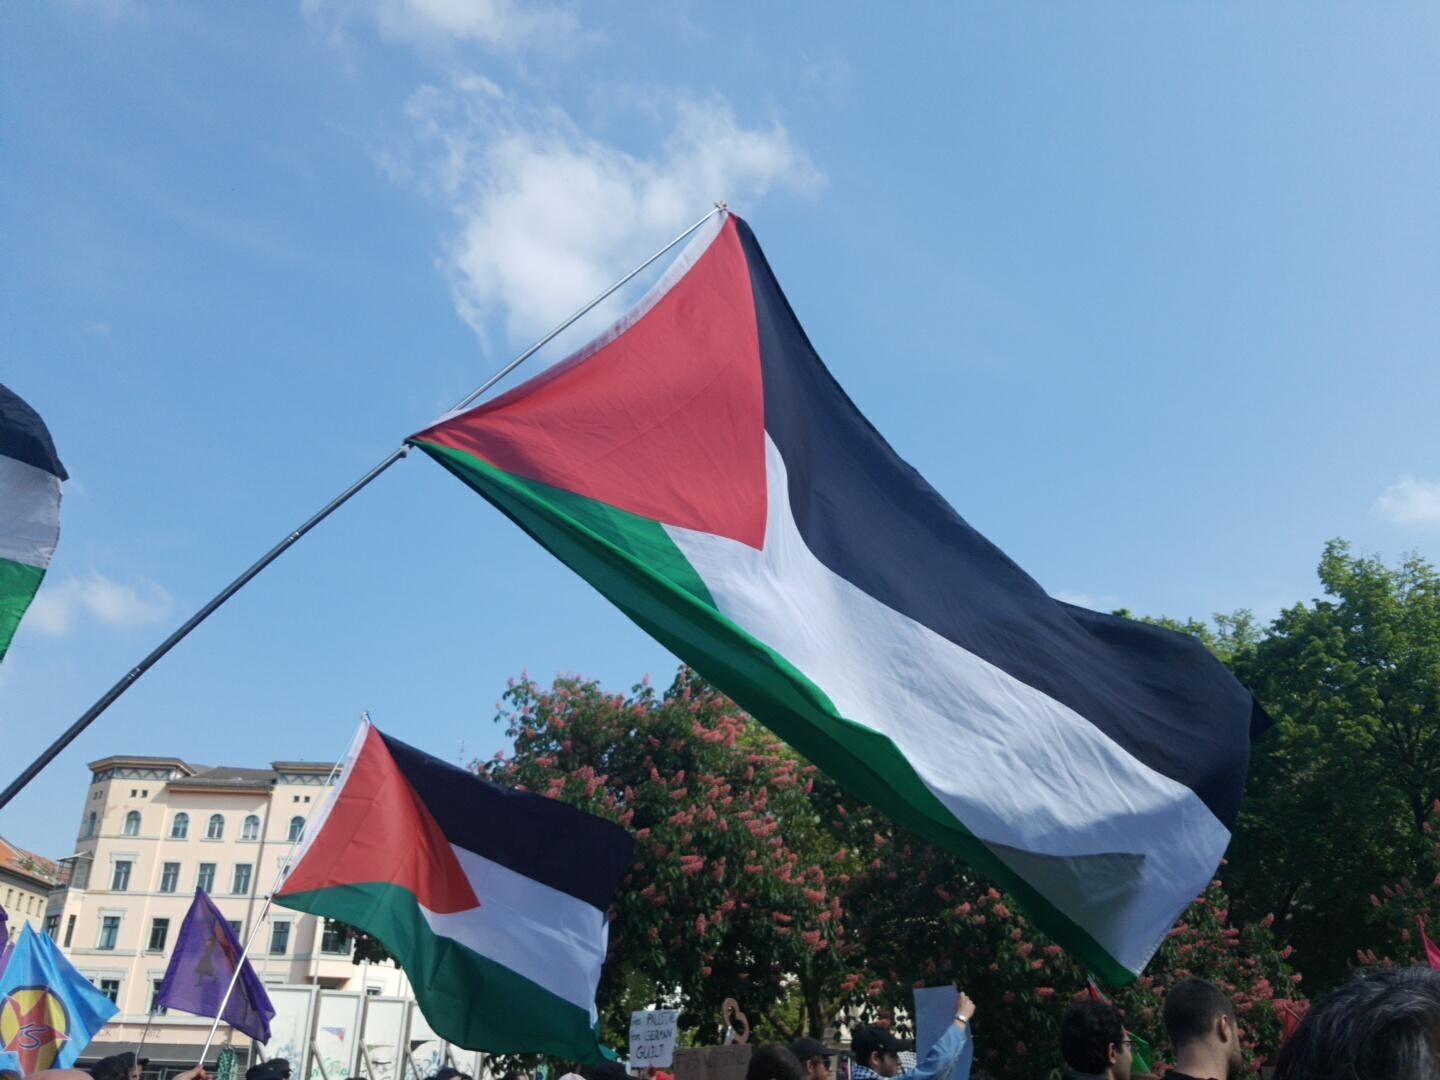 Palästina -autoflagge Palästinensische Arabische Flagge Fahnenmast